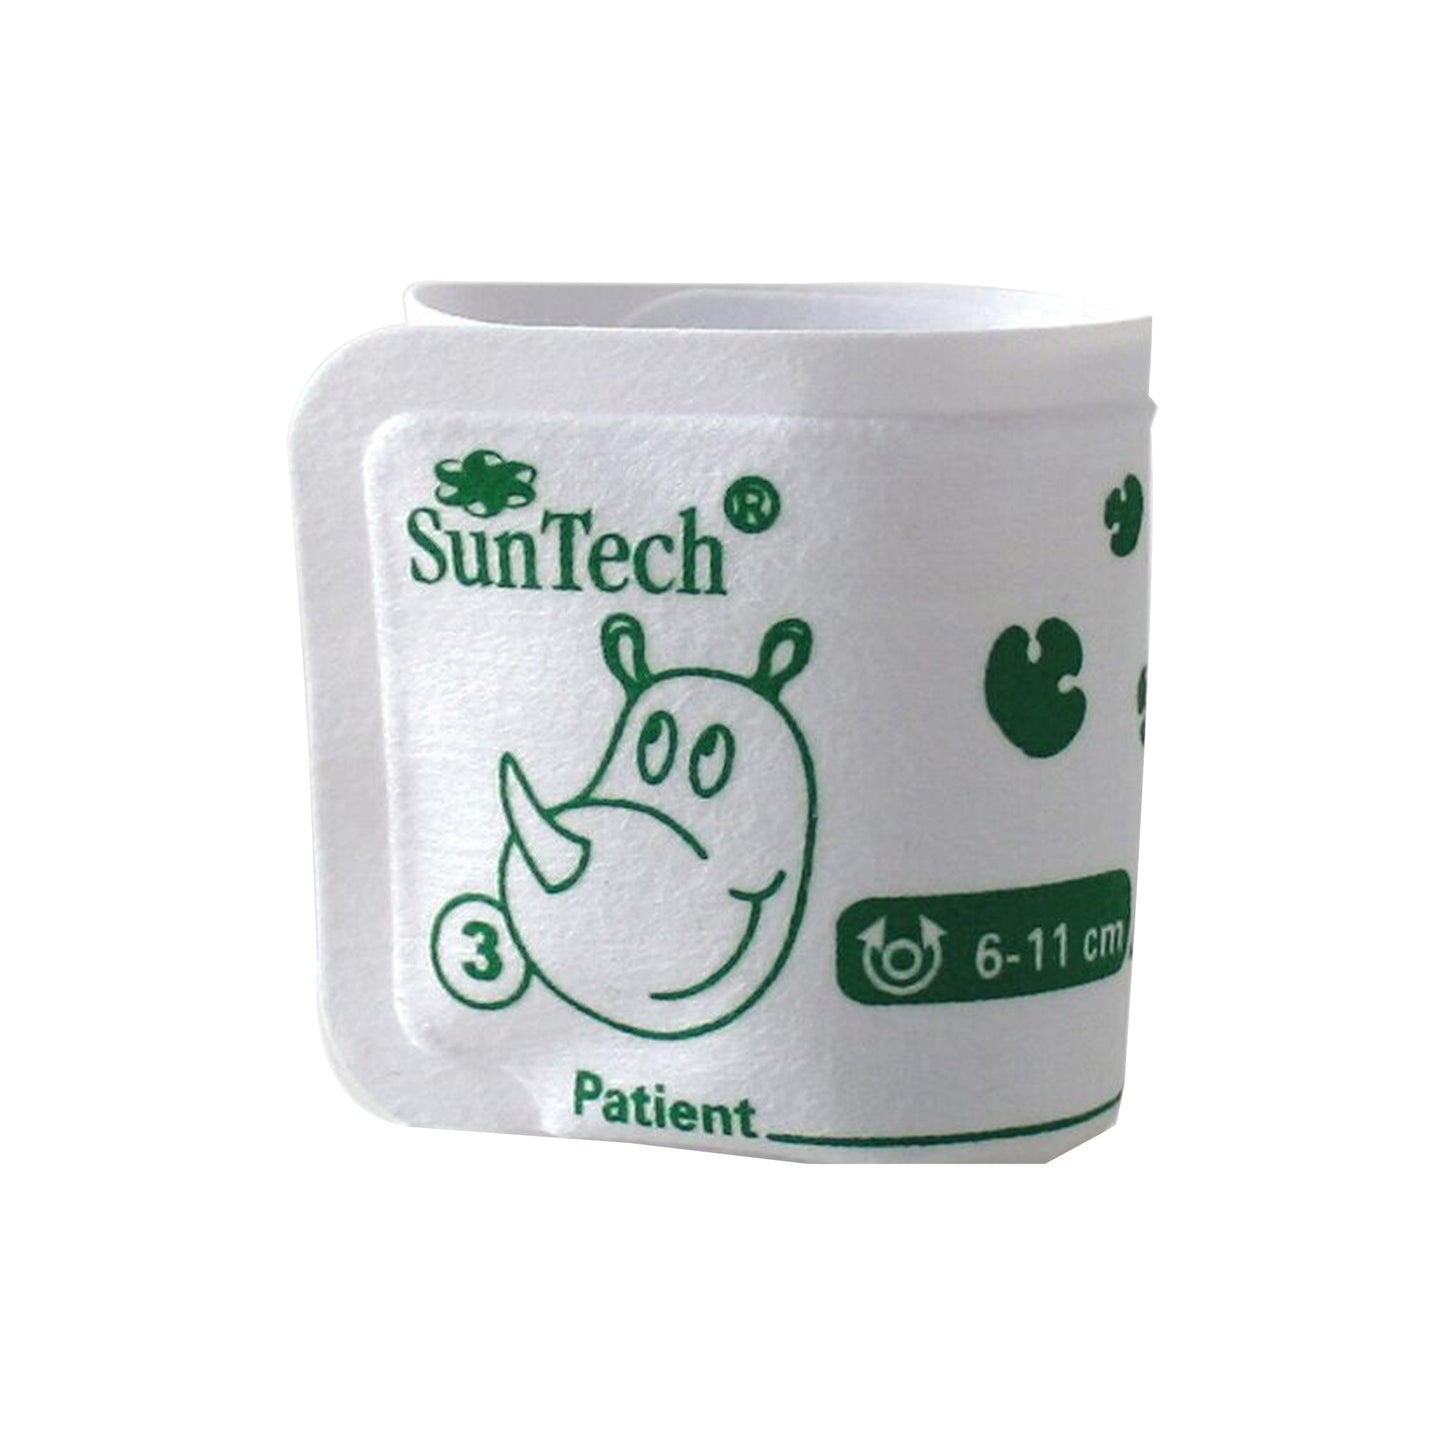 SunTech BP Vet Cuff Size 3, 6–11cm